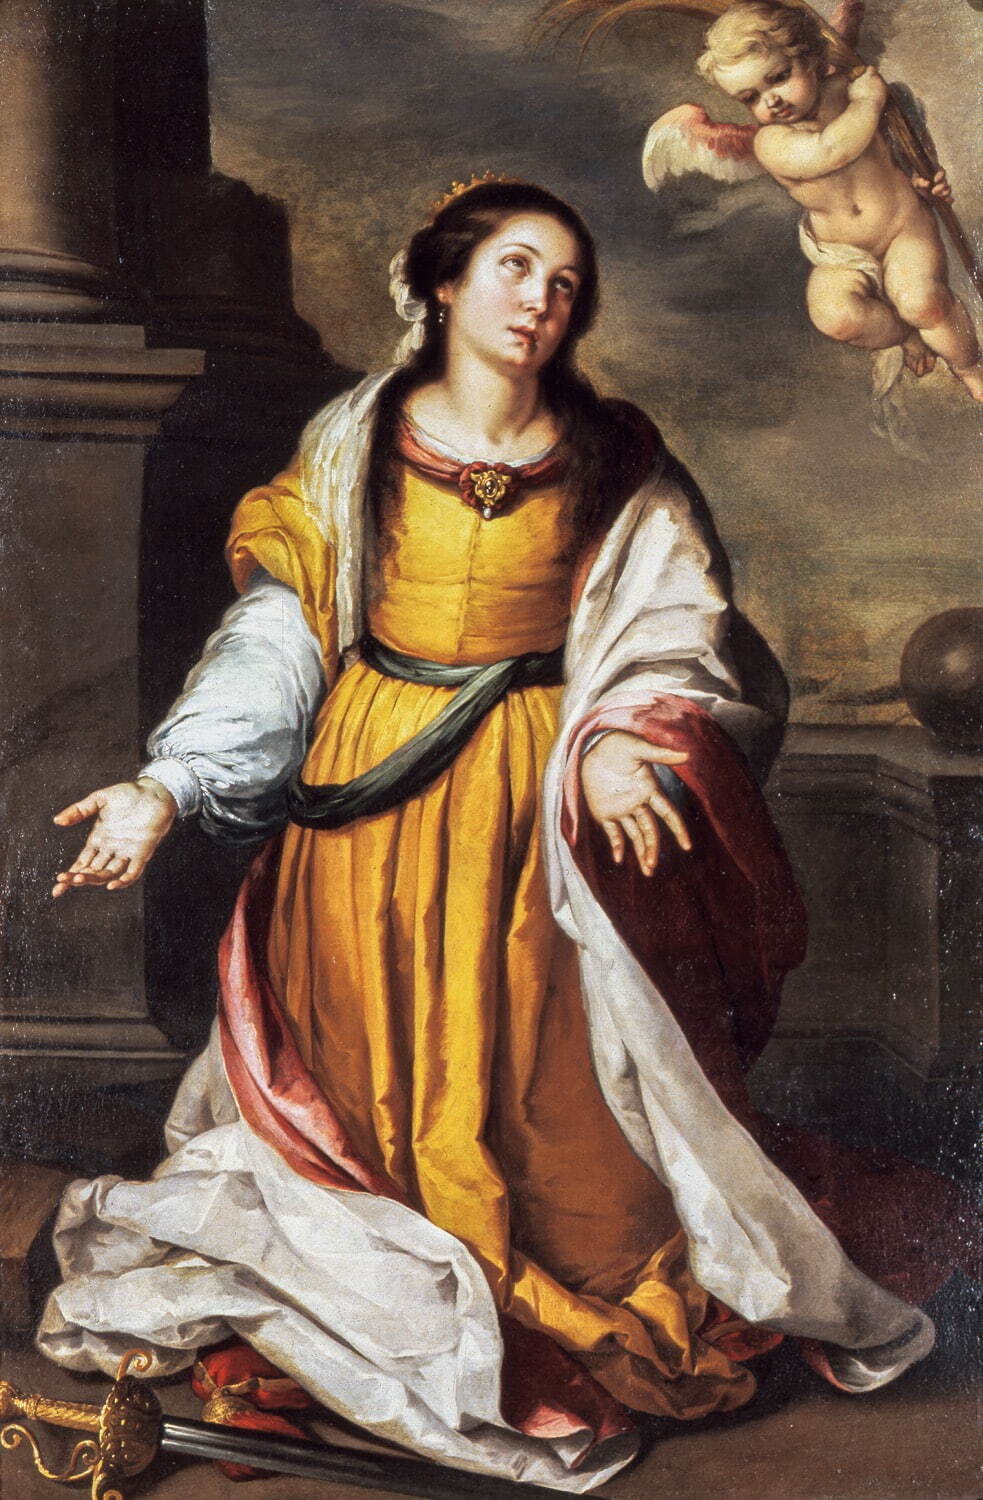 バルトロメ・エステバン・ムリーリョ 《アレクサンドリアの聖カタリナ》
1645-50年頃 油彩・カンヴァス 三重県立美術館